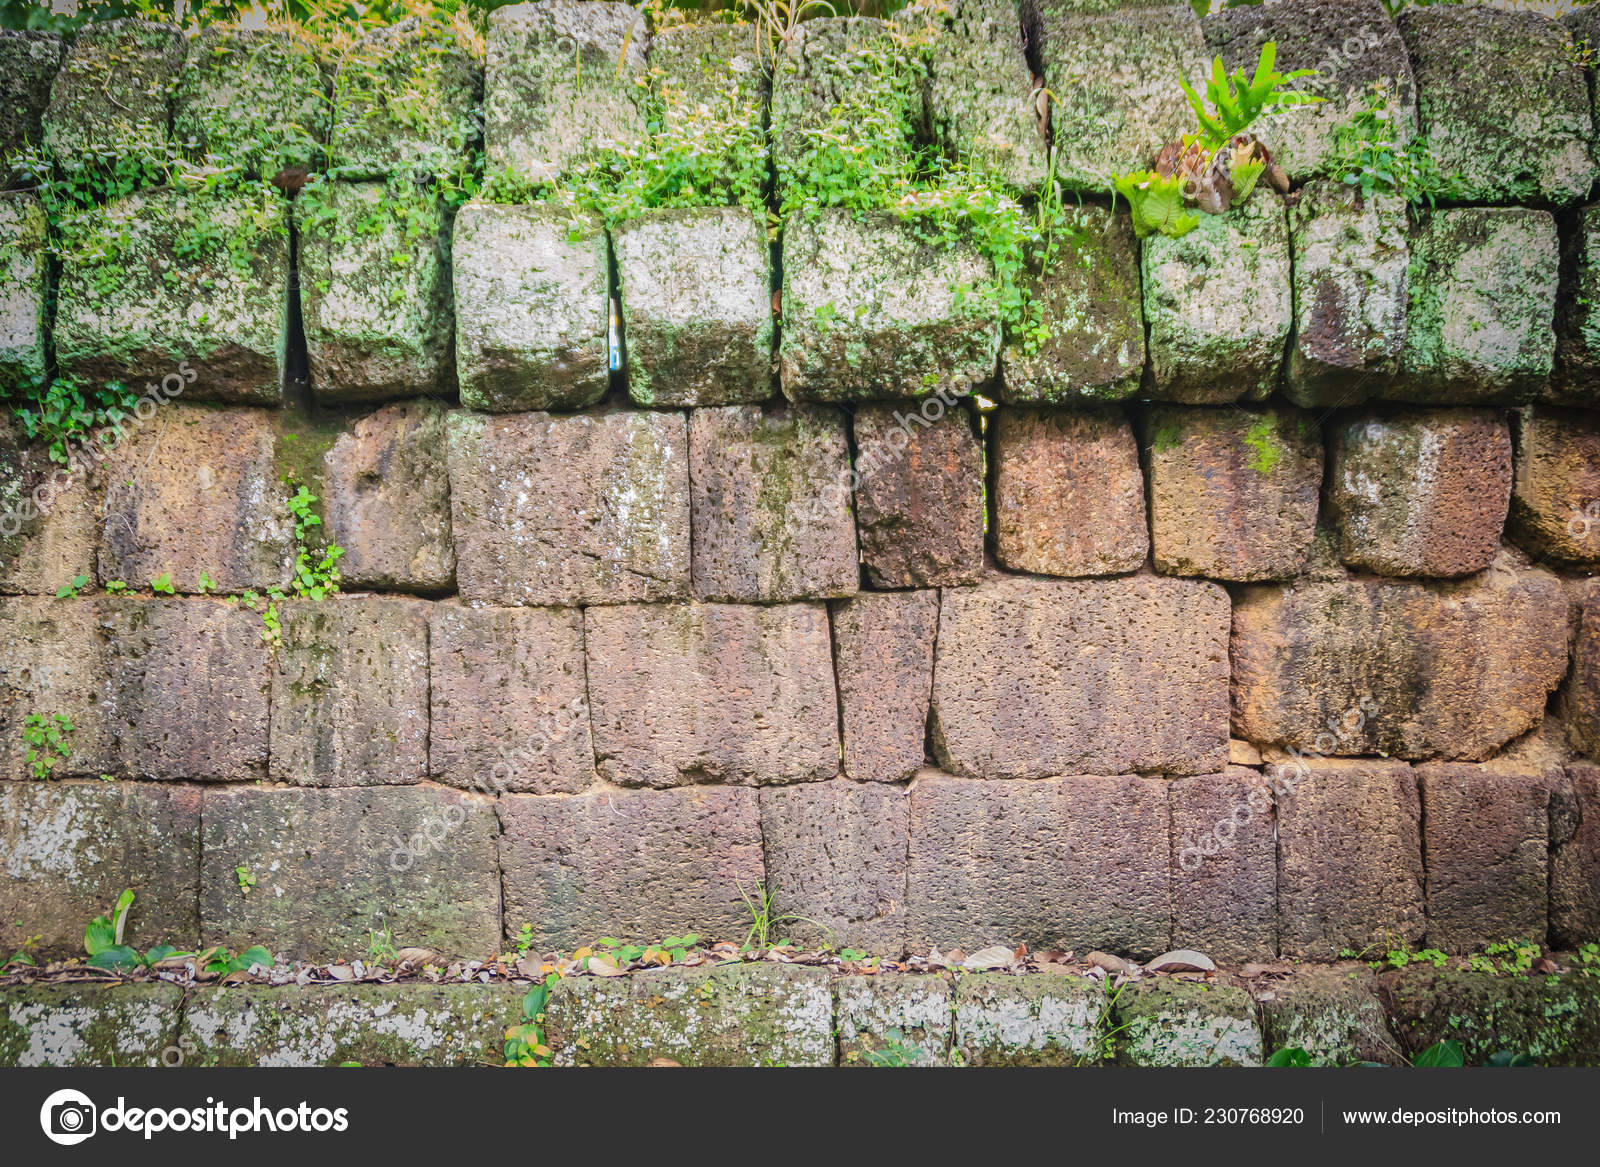 Fonkelnieuw Lateriet Stenen Muur Met Gras Mos Groei Vormen Prachtige Textuur YE-94